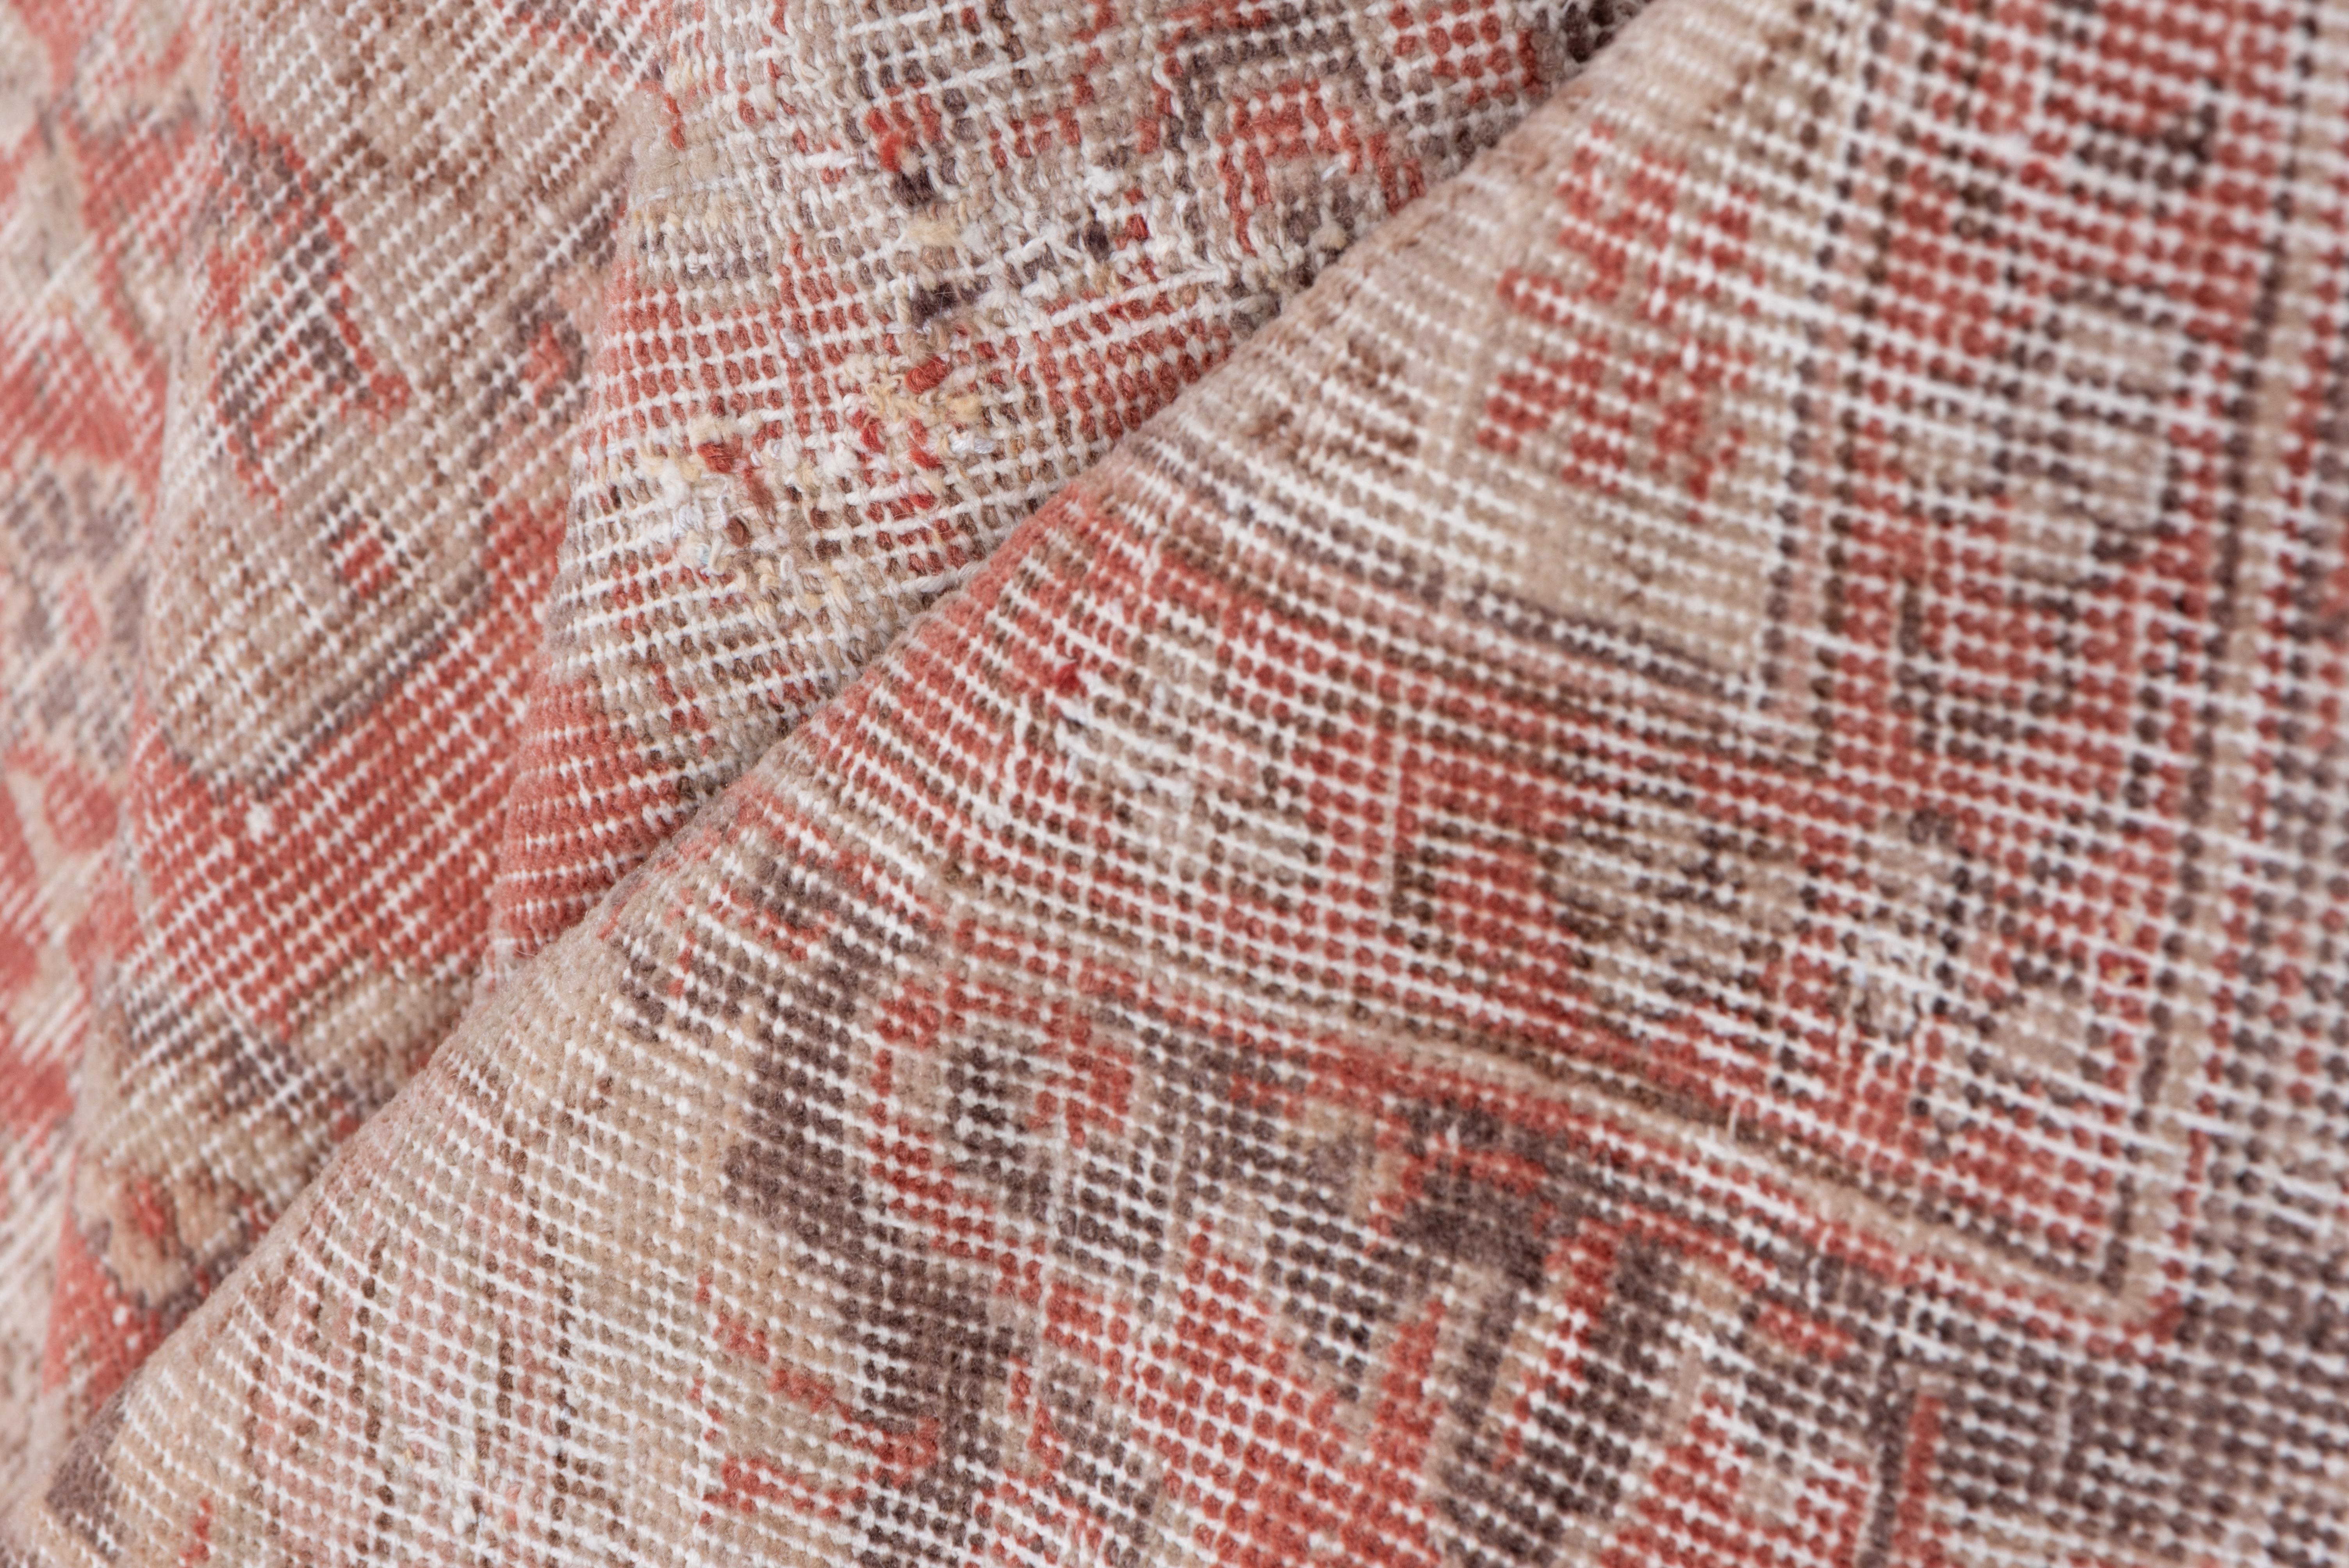 Dieser ziemlich ramponierte anatolische Stadtteppich zeigt ein hellrotes und rostfarbenes Feld mit einem Allover-Muster aus Palmetten des persischen Schah 'Abbas, mit einer dunklen Bordüre aus Palmetten und gegabelten Akanthusblättern. Einige